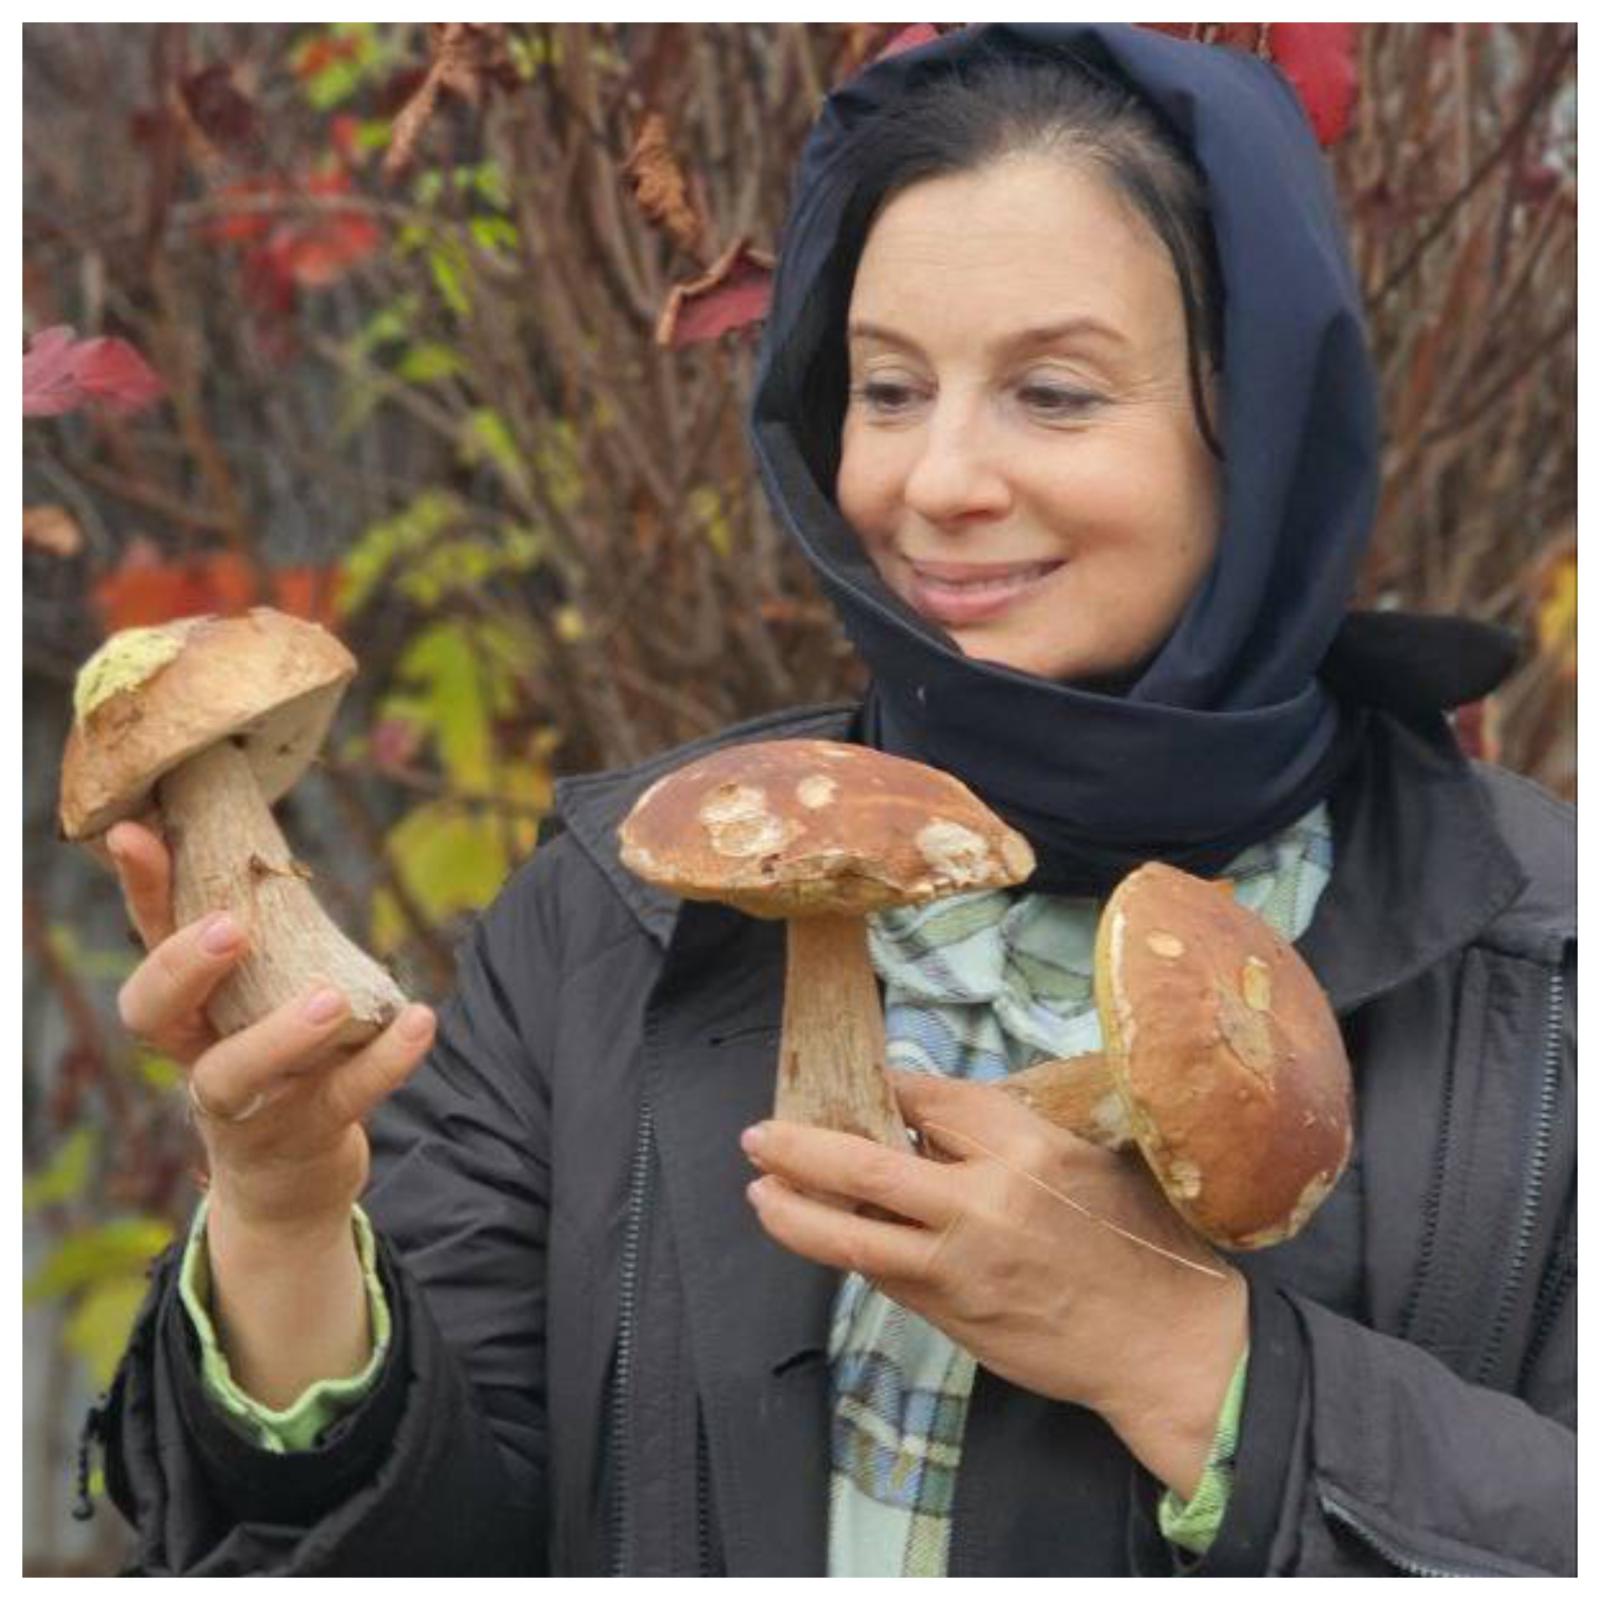 Екатерина Стриженова похвасталась богатым «уловом» грибов